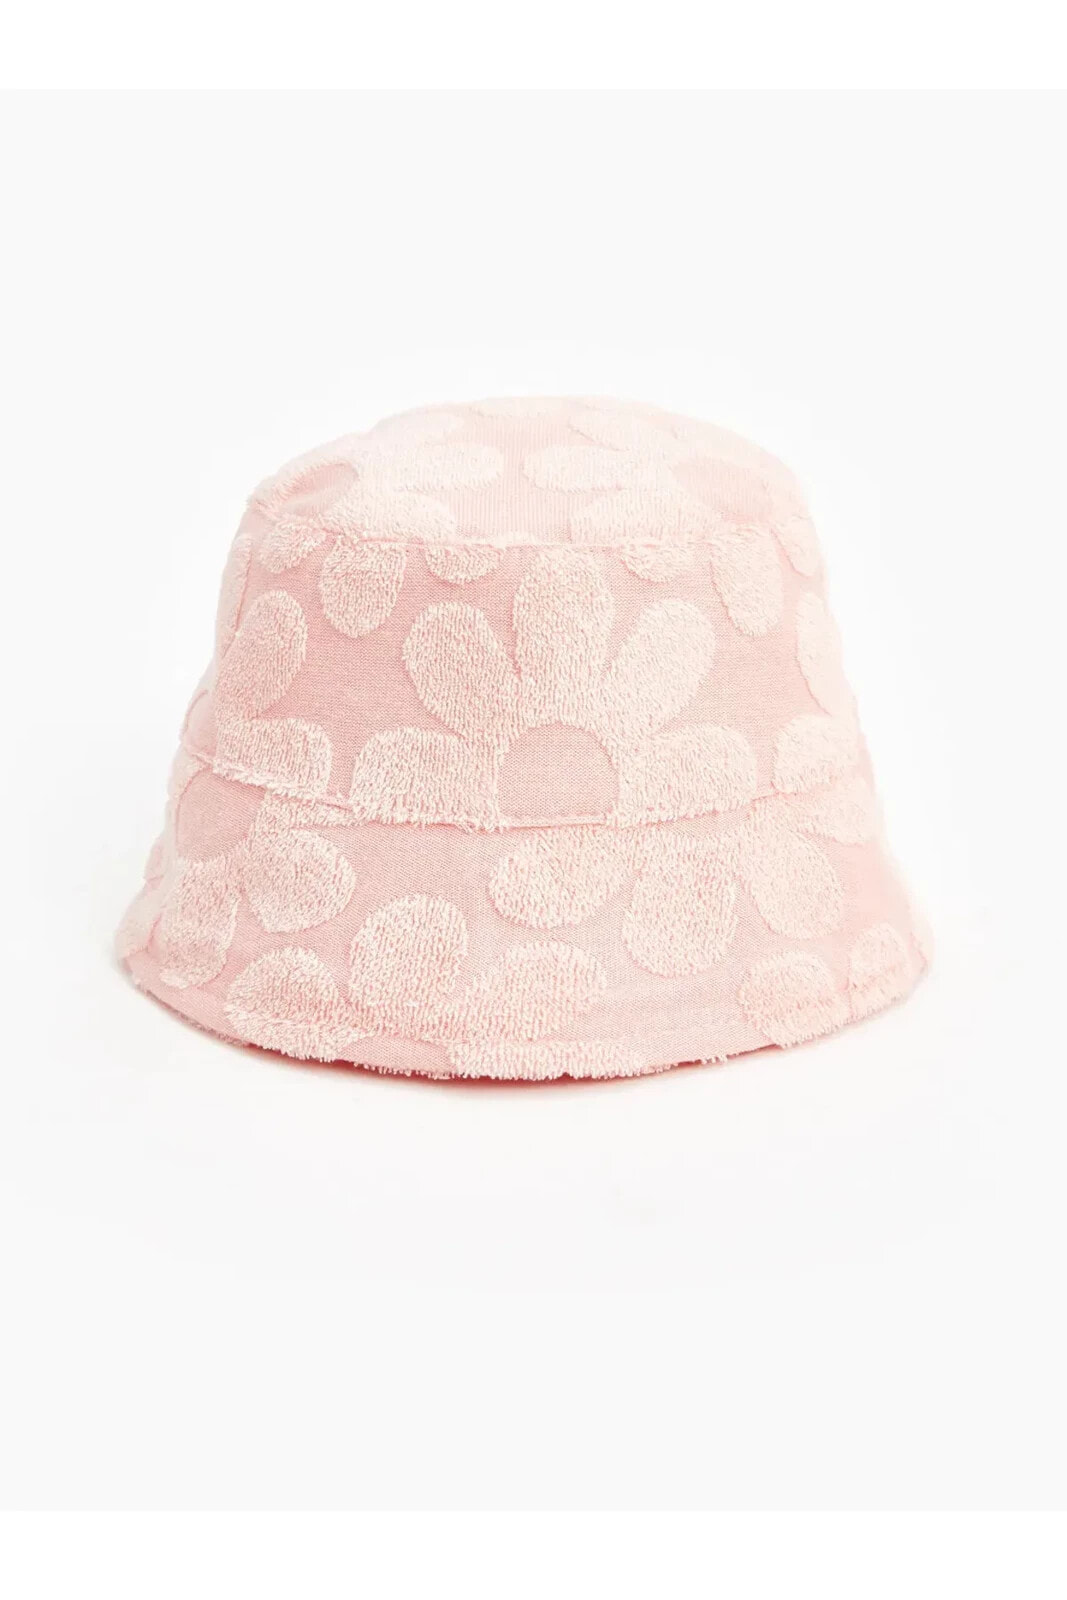 LCW baby Desenli Kız Bebek Bucket Şapka